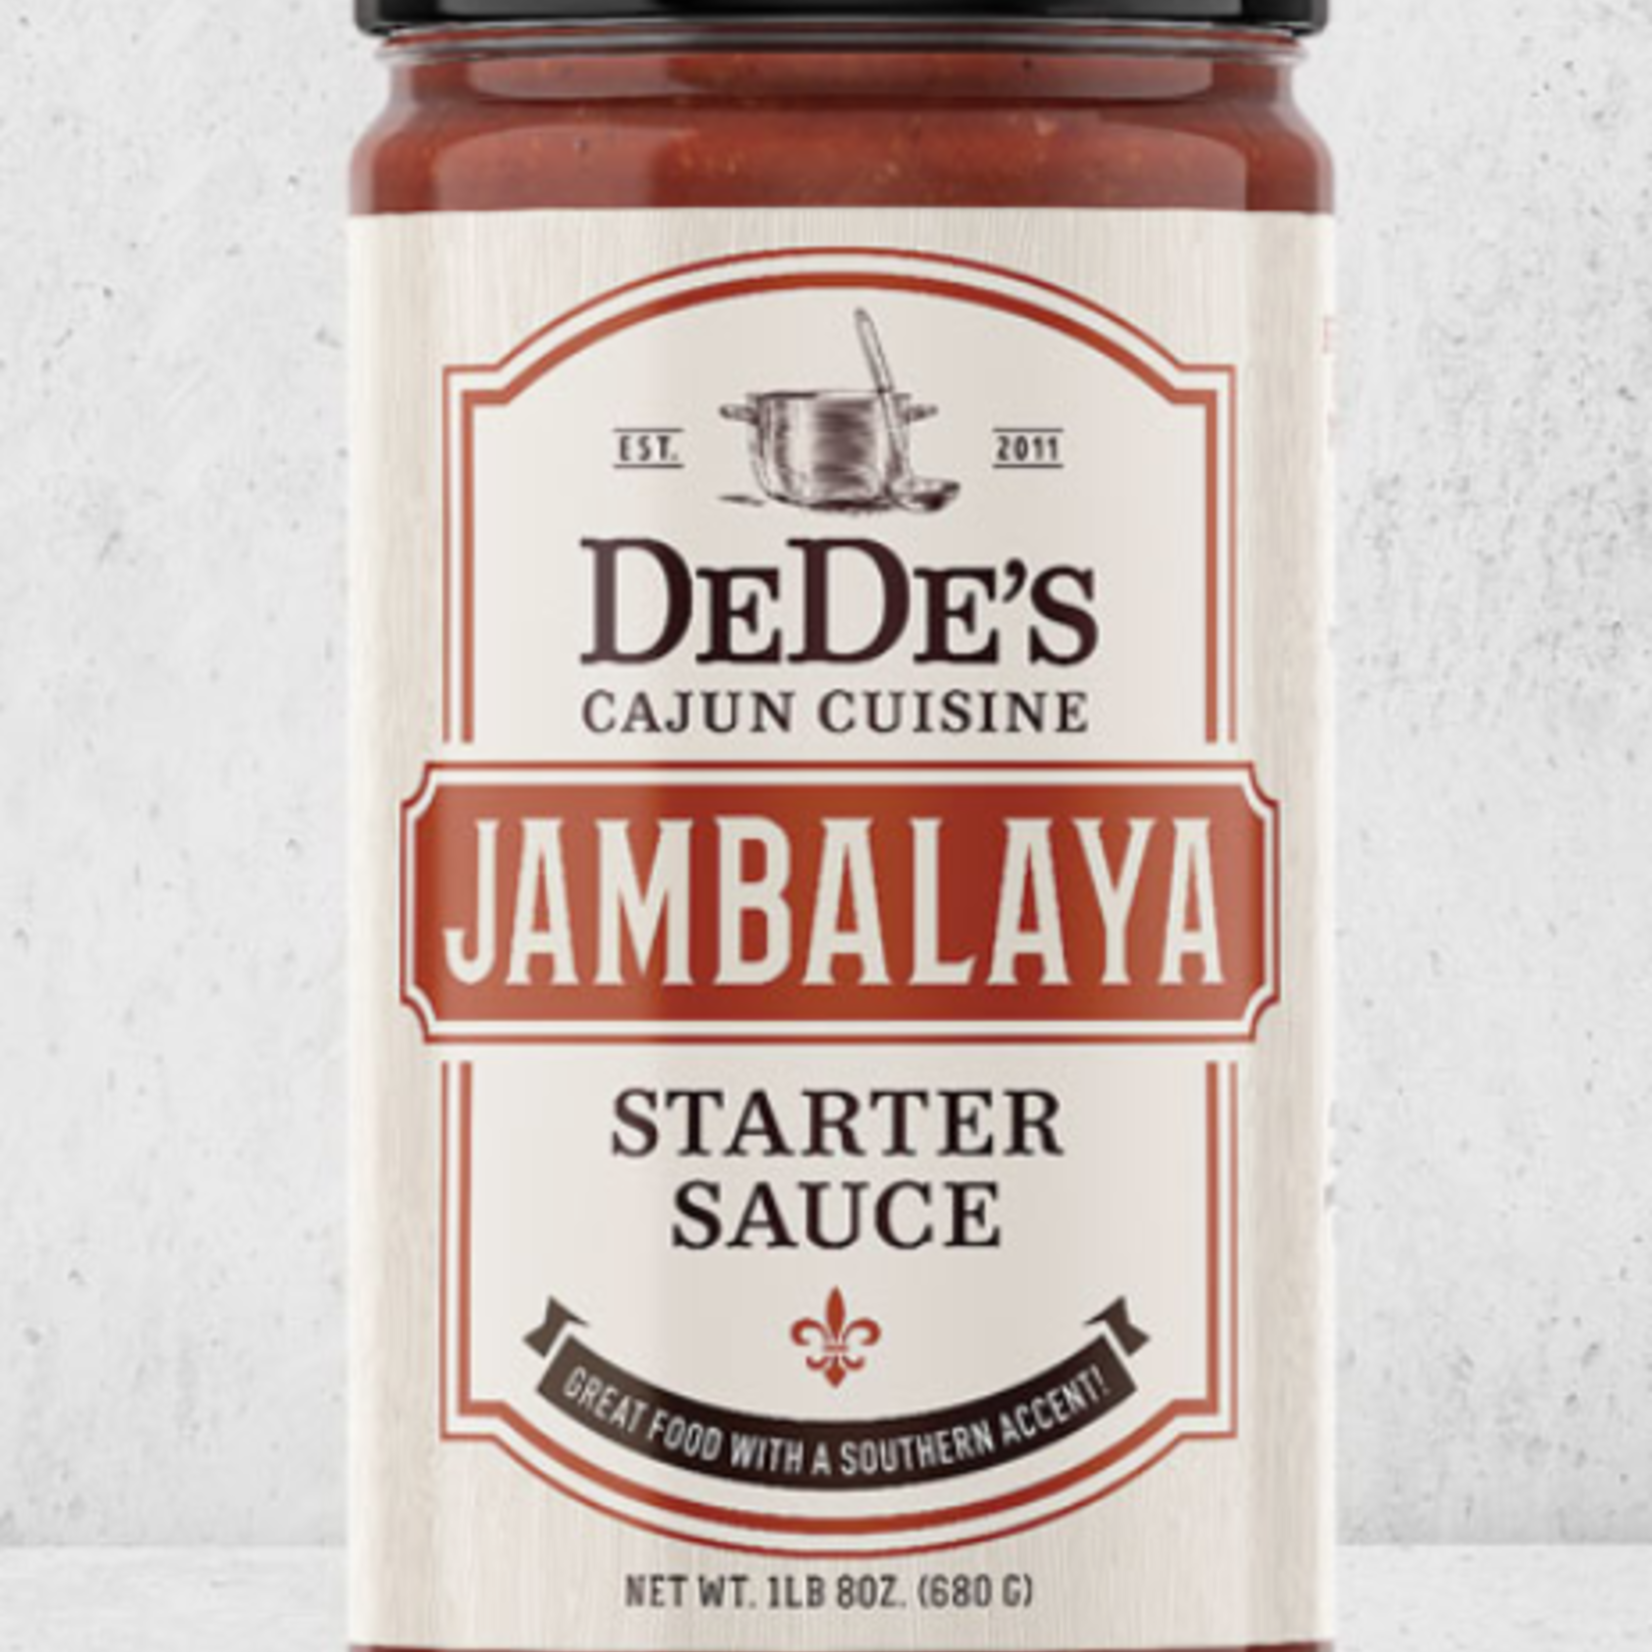 DeDe's Cajun Cuisine Jambalaya Starter Kit